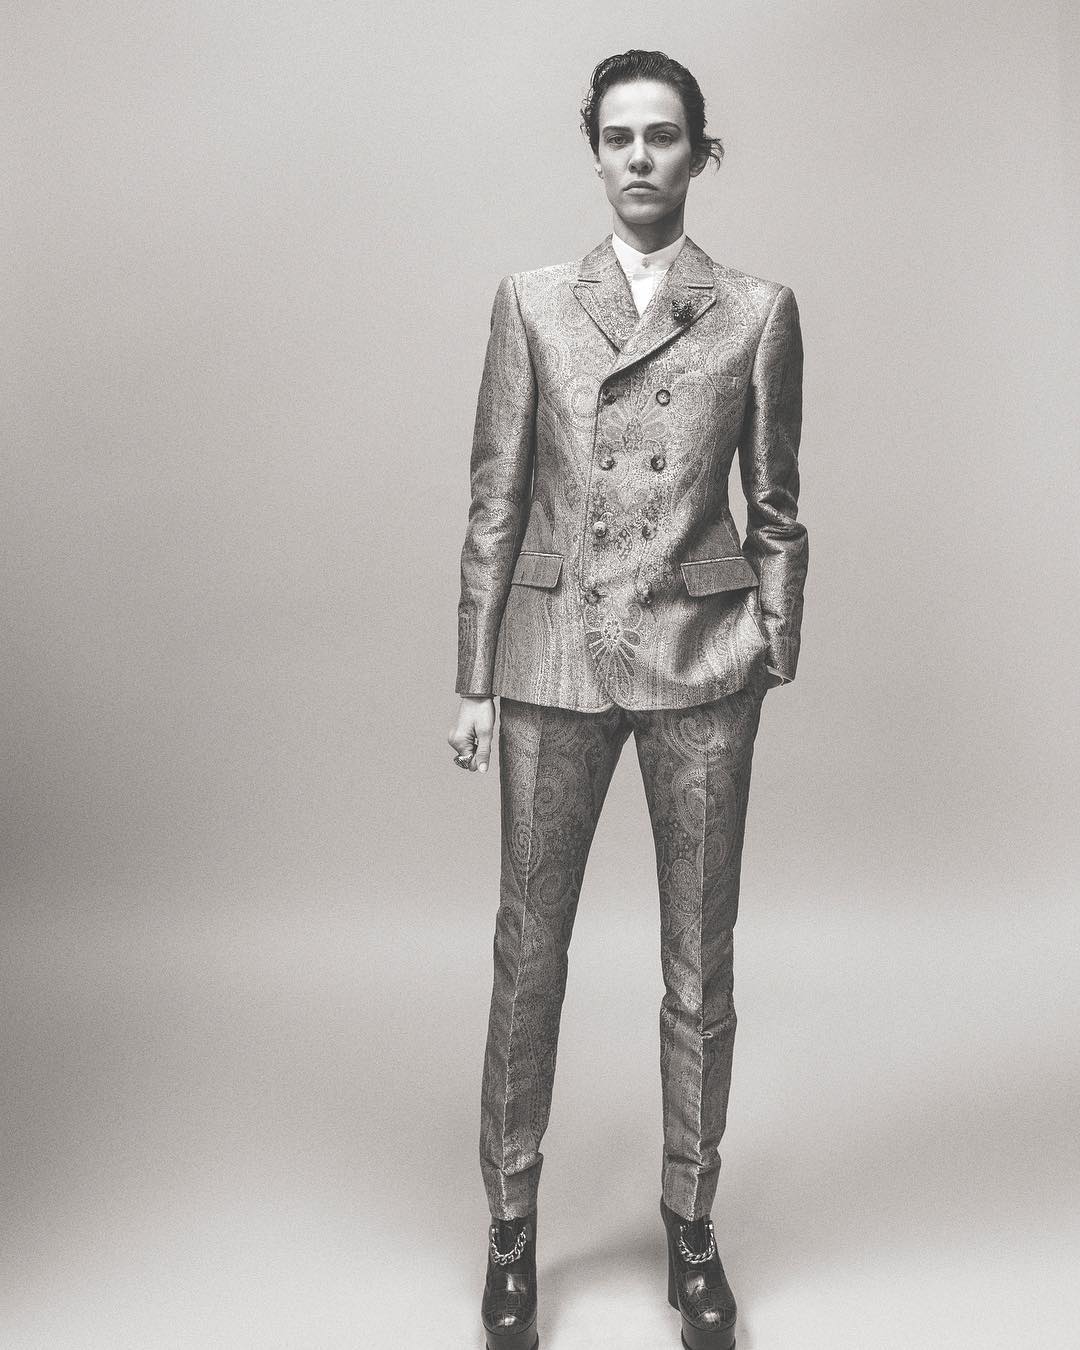 Michael Philouze | Vogue Italia & L'Uomo Vogue | Photographed by Scott Trindle | 38